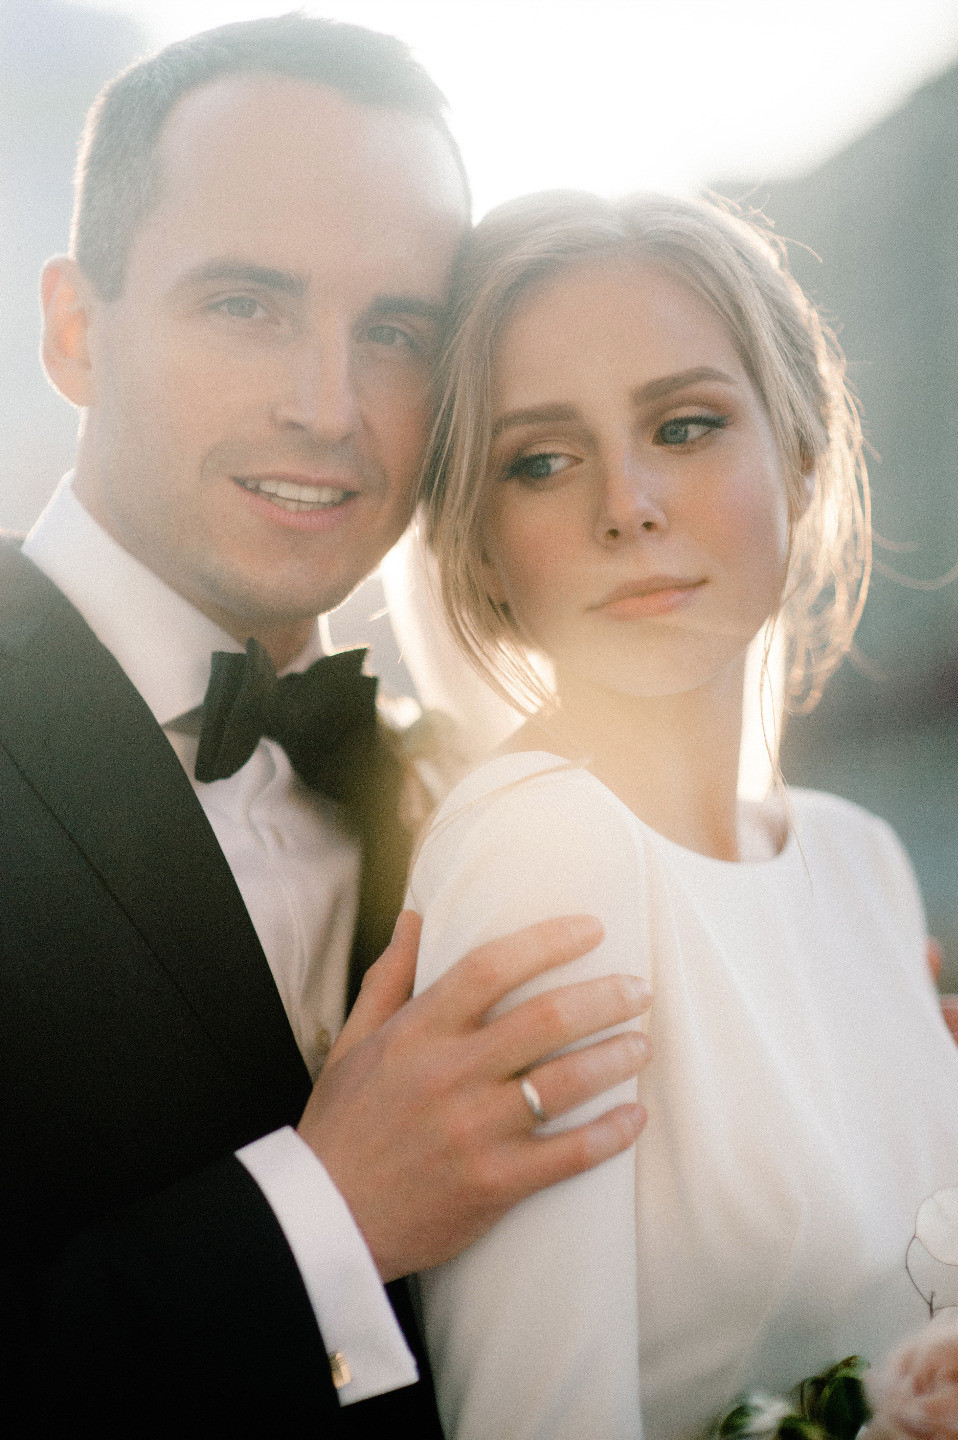 Simple Elegance: свадьба в белой палитре